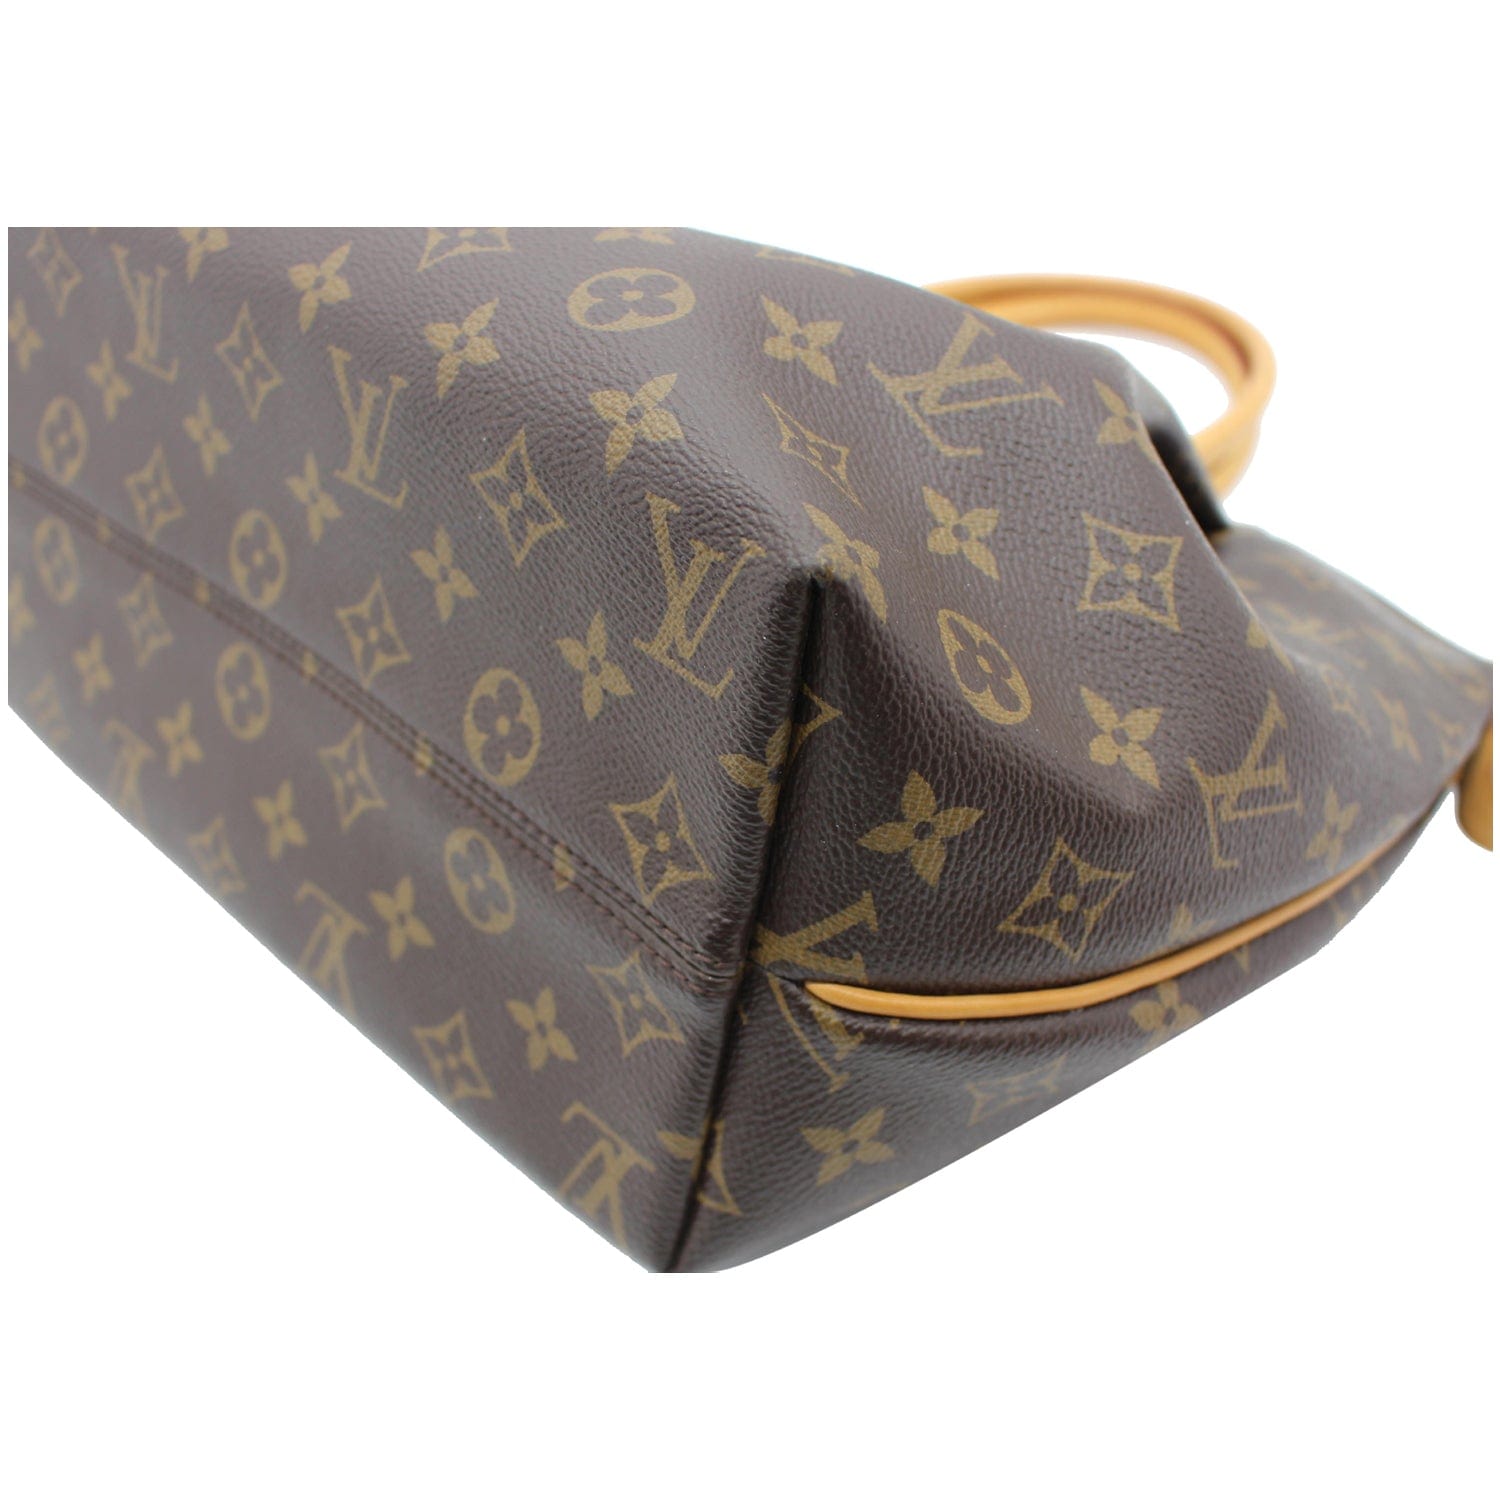 Authentic Louis Vuitton Turenne MM Monogram Canvas Shoulder Bag